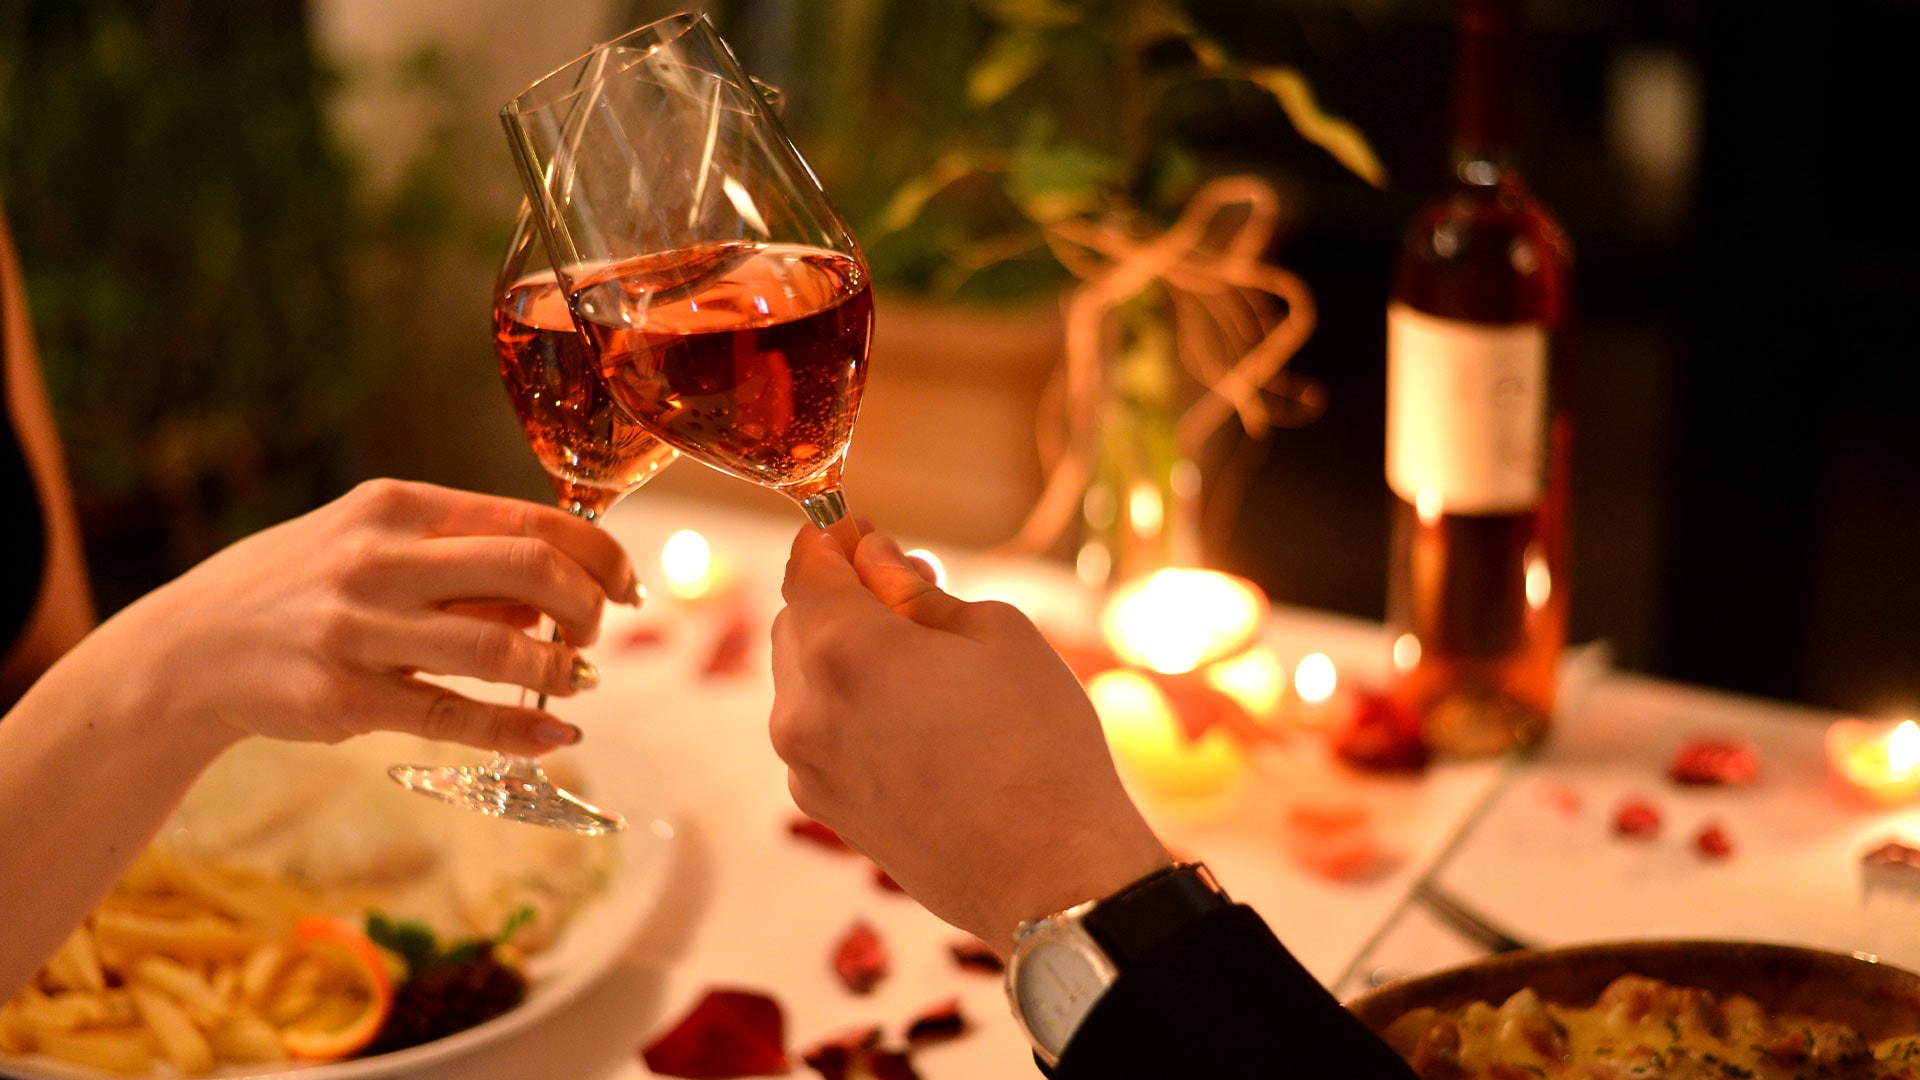 マリーナベイ・サンズでディナーと赤ワインを楽しみながらバレンタインデーを祝うカップル